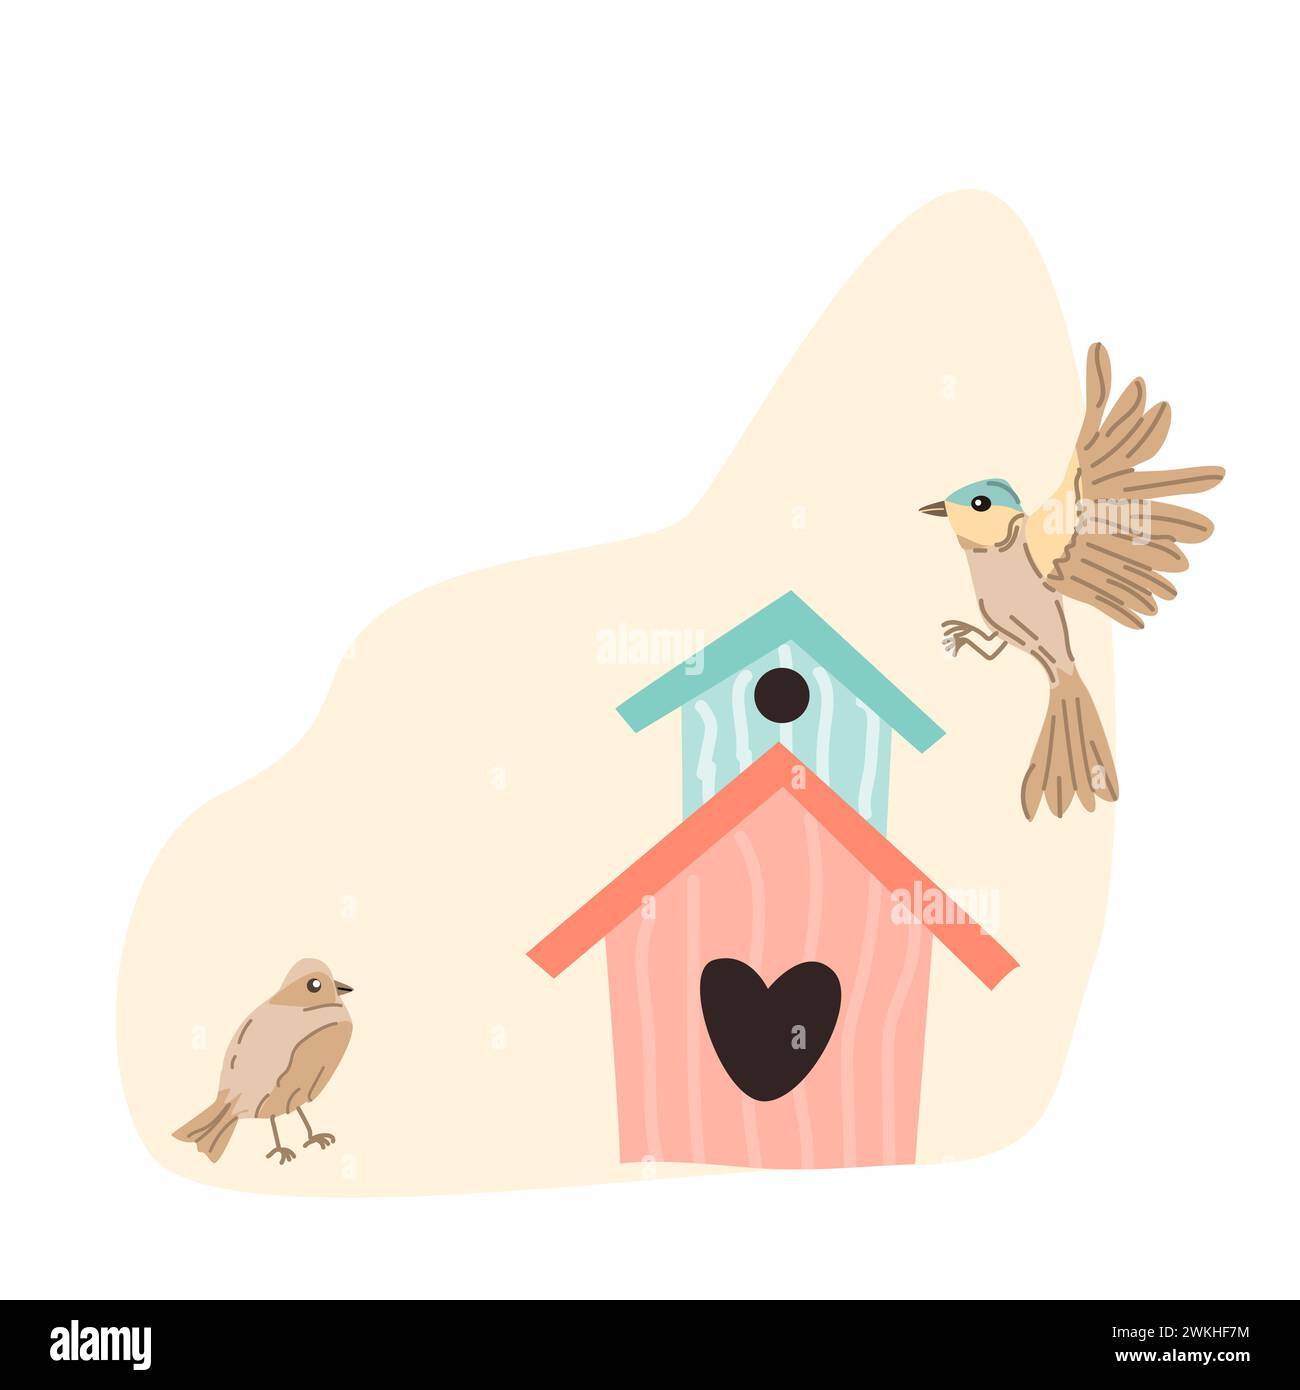 Frühlingsvögel und Vogelhaus auf pfirsichfarbenem Hintergrund für Grußkarte, Cover Design. Vektordarstellung isoliert. Kann für Tapeten, Poster, Druckdesign für Stoffe verwendet werden. Stock Vektor